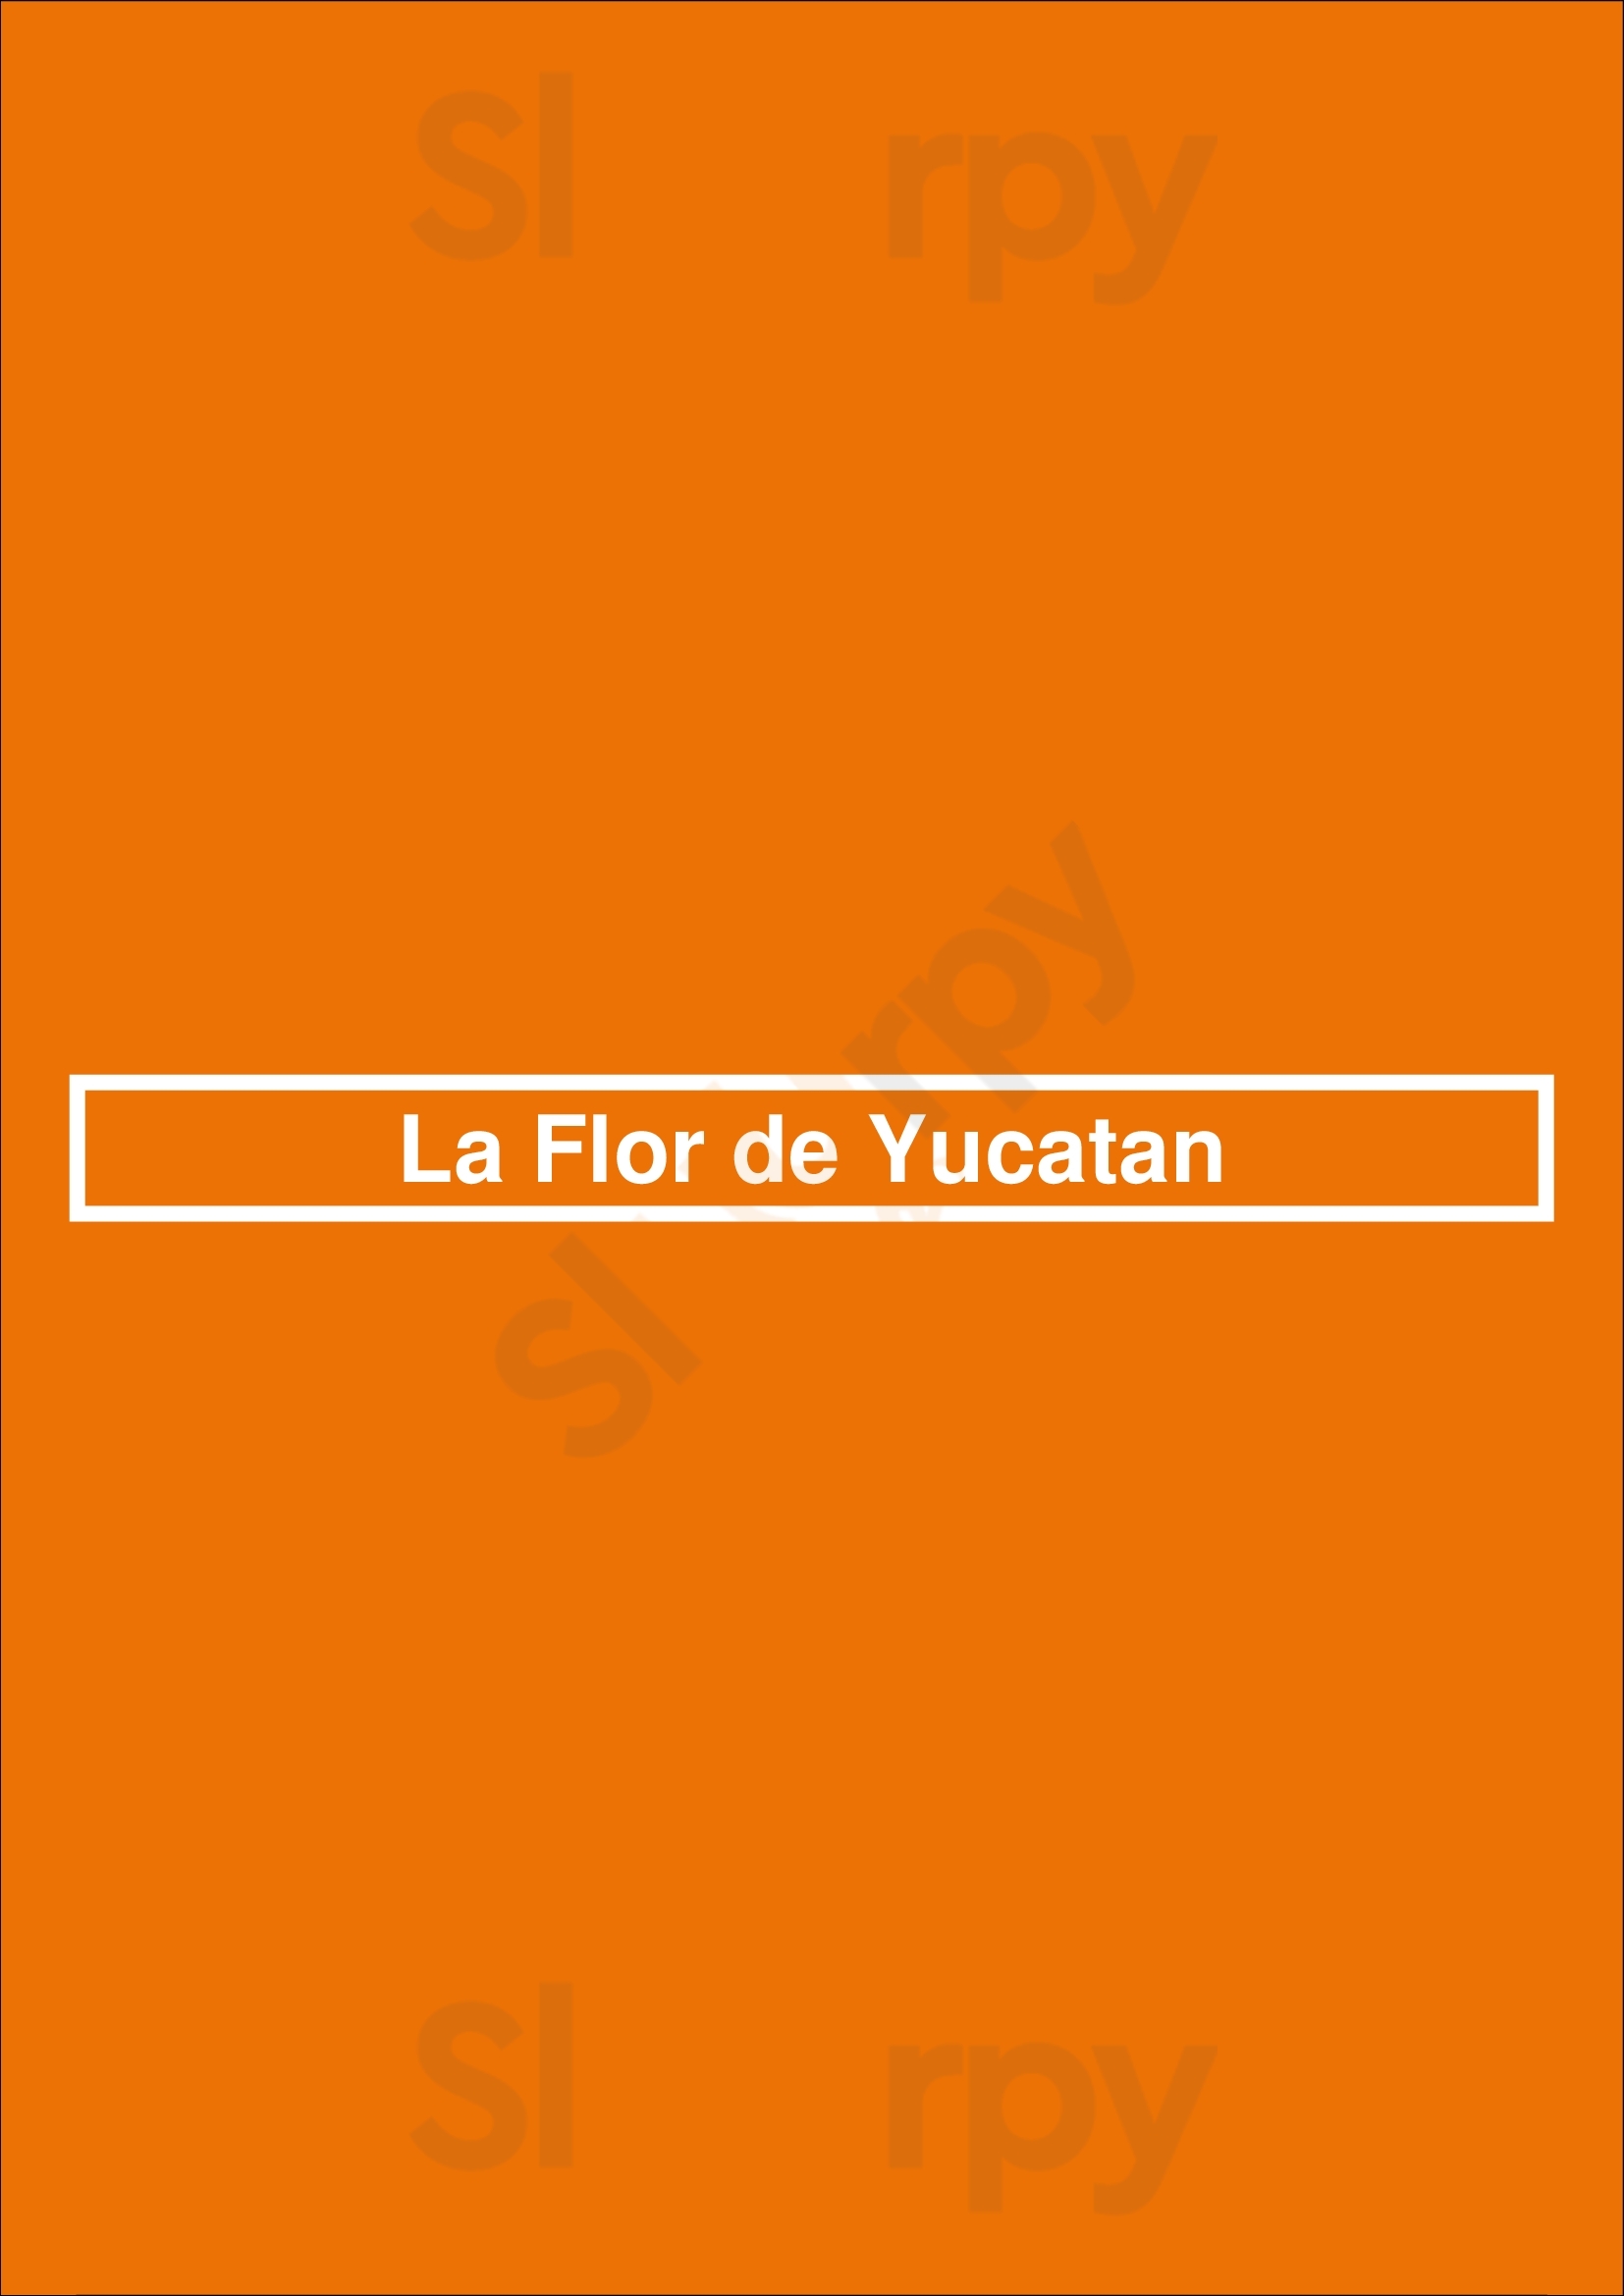 La Flor De Yucatan Los Angeles Menu - 1